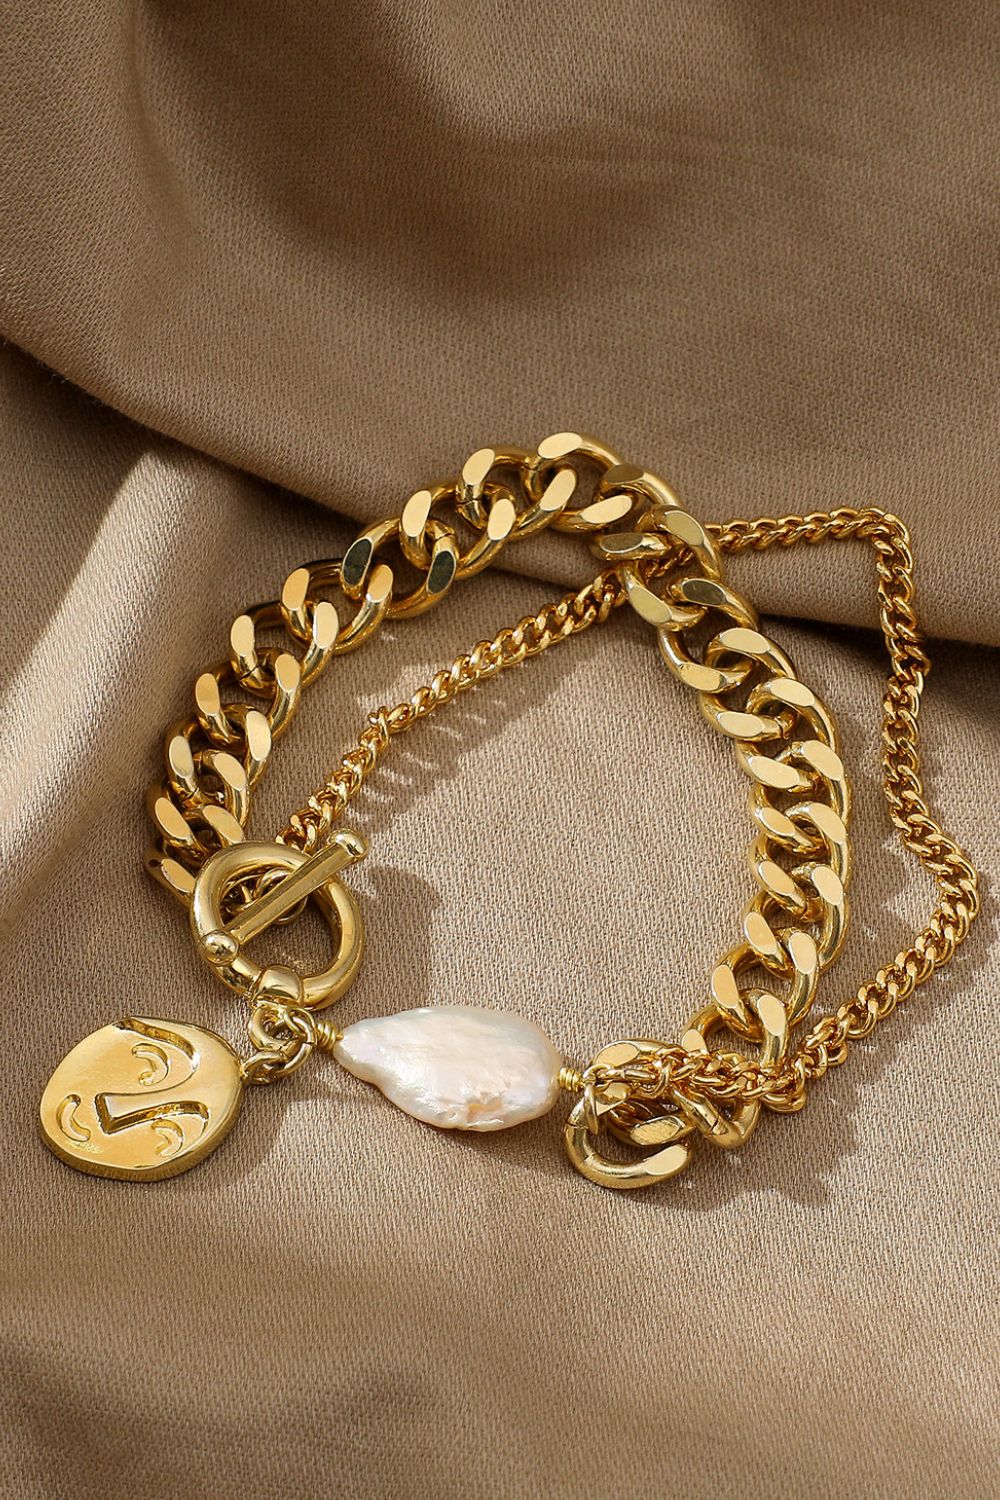 Gold Chain & Pearl Bracelet - Gold / One Size - Women’s Jewelry - Bracelets - 2 - 2024